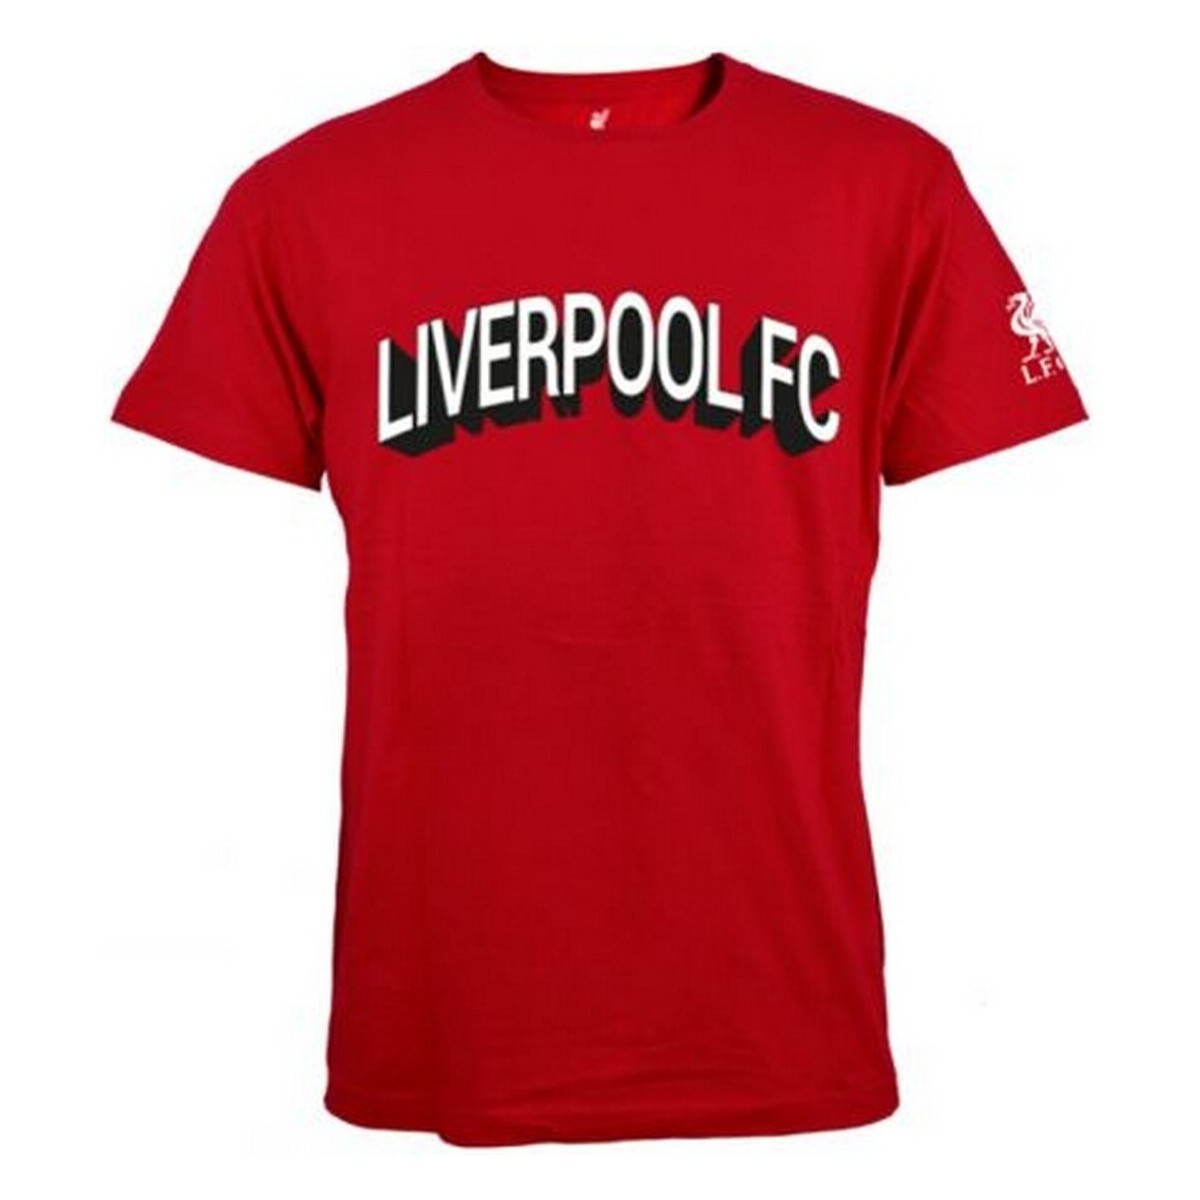 Abbigliamento Uomo T-shirts a maniche lunghe Liverpool Fc BS3296 Rosso